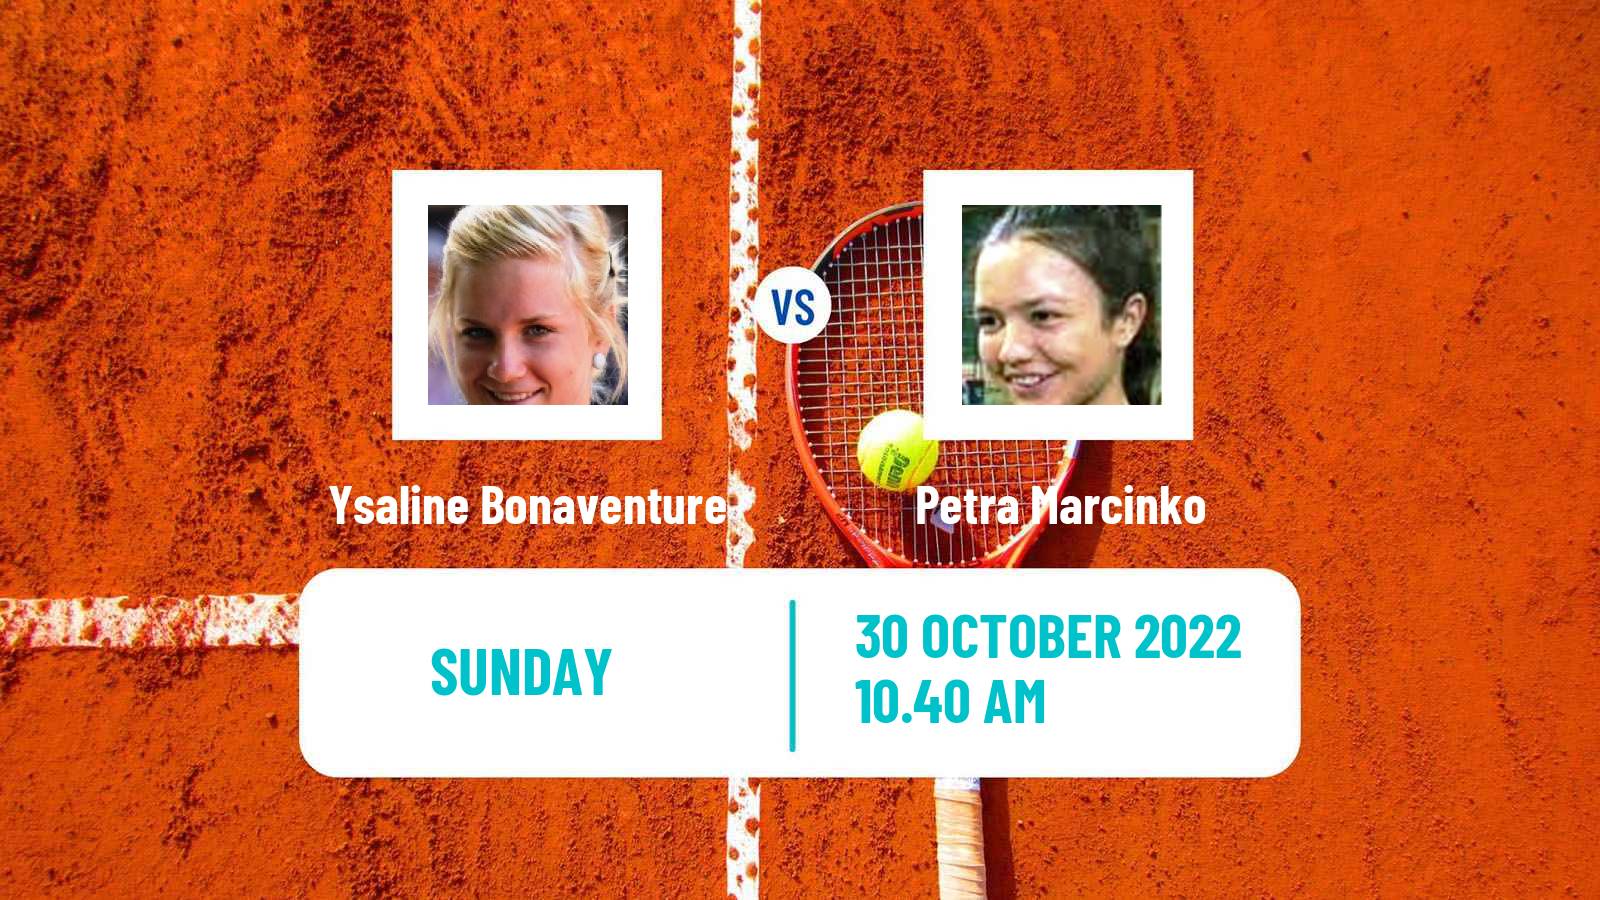 Tennis ITF Tournaments Ysaline Bonaventure - Petra Marcinko